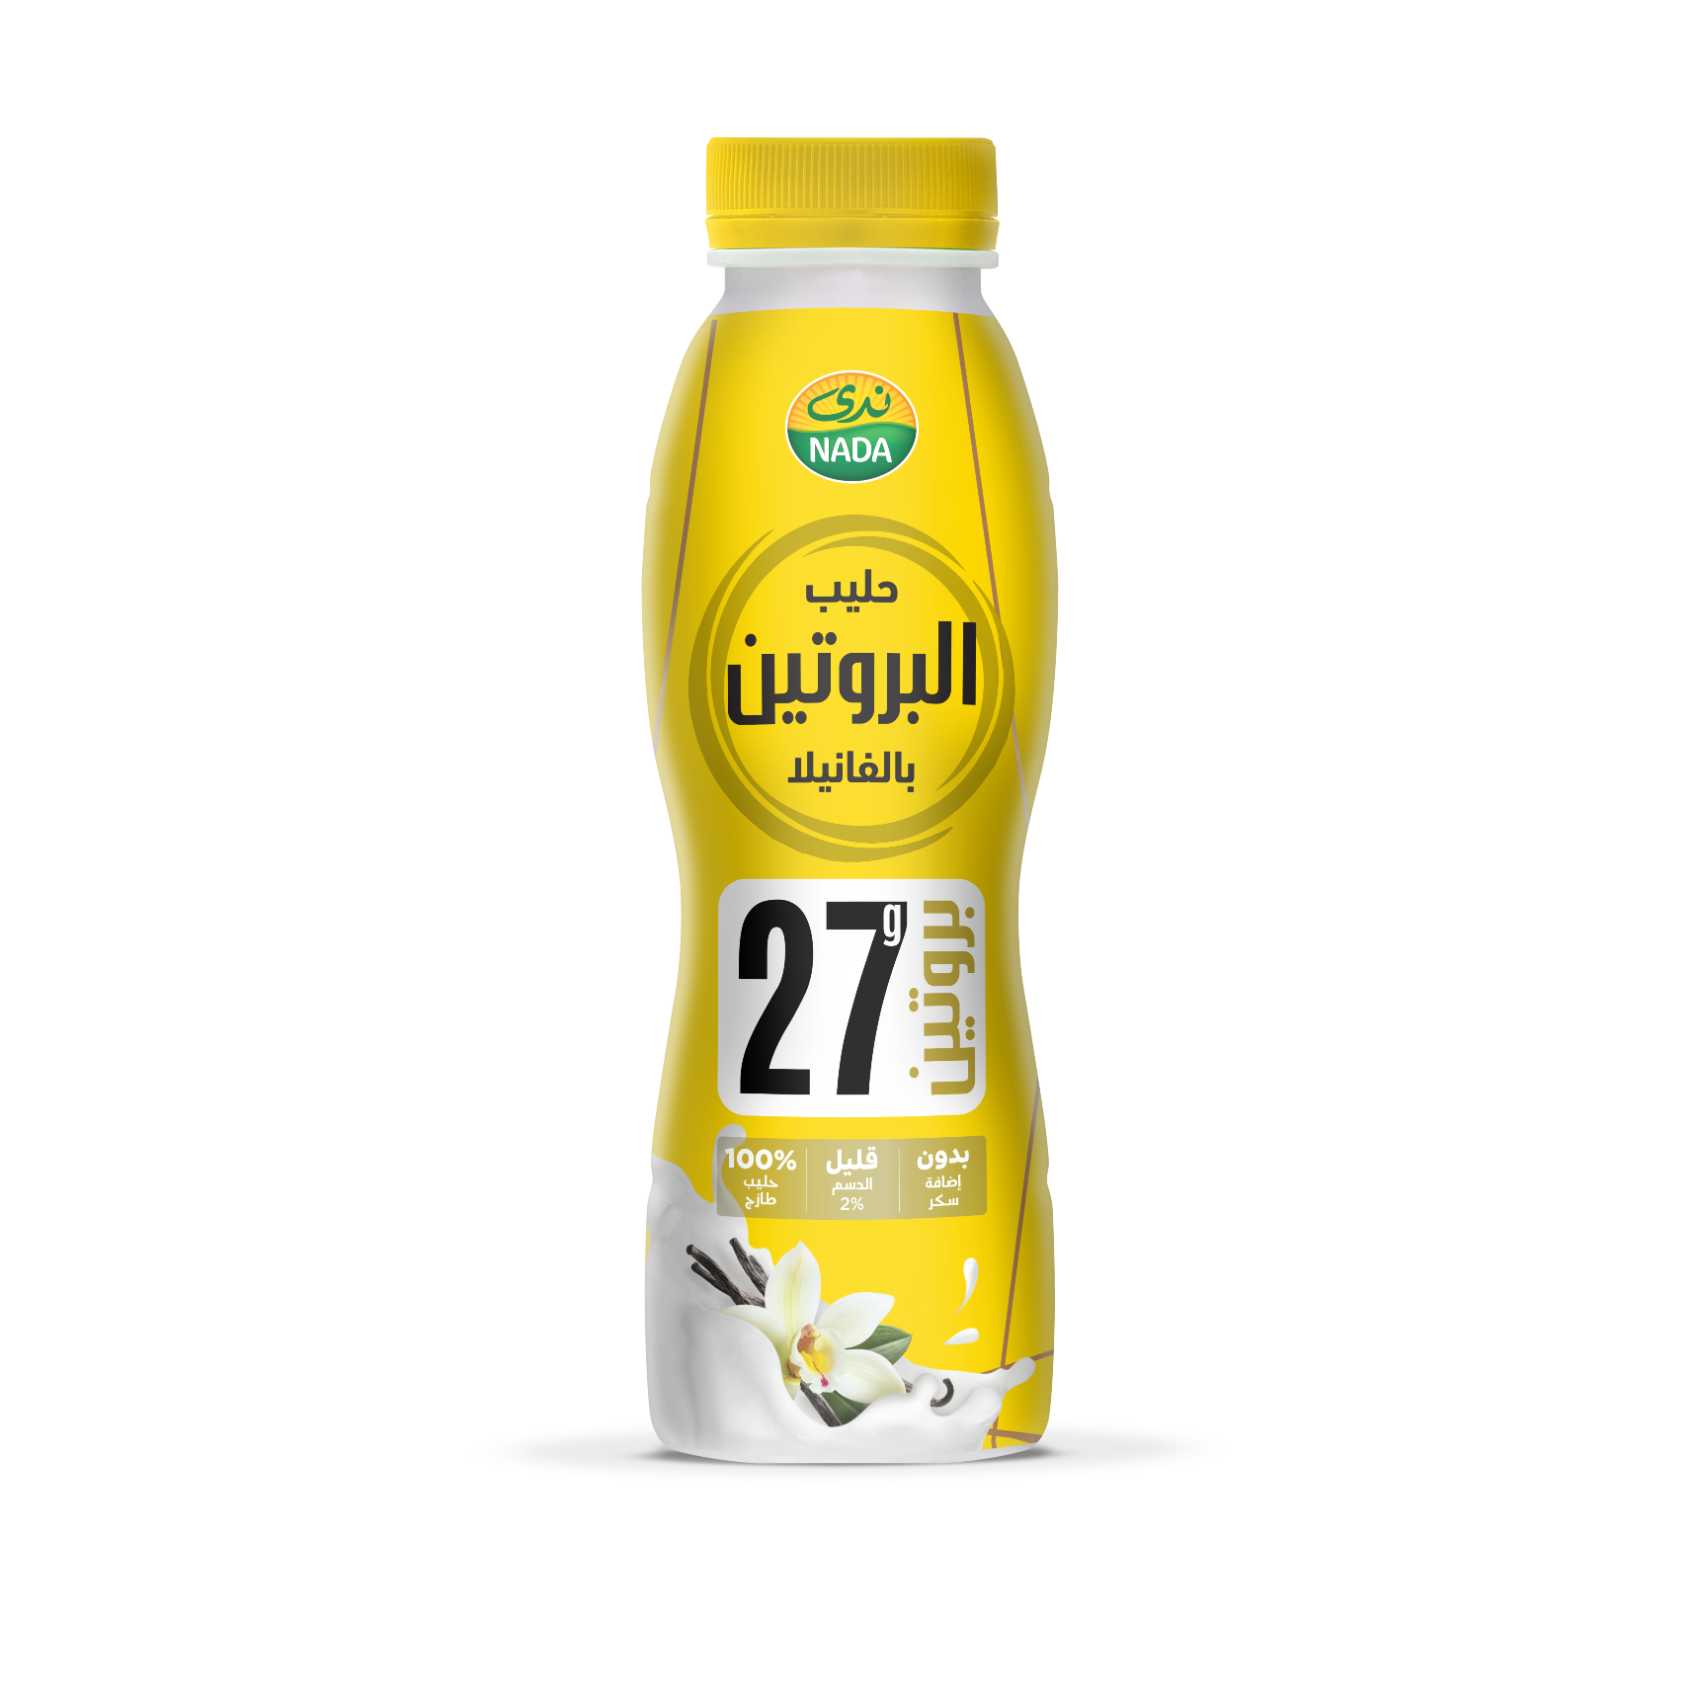 Nada Protein Vanilla Milk 320ml